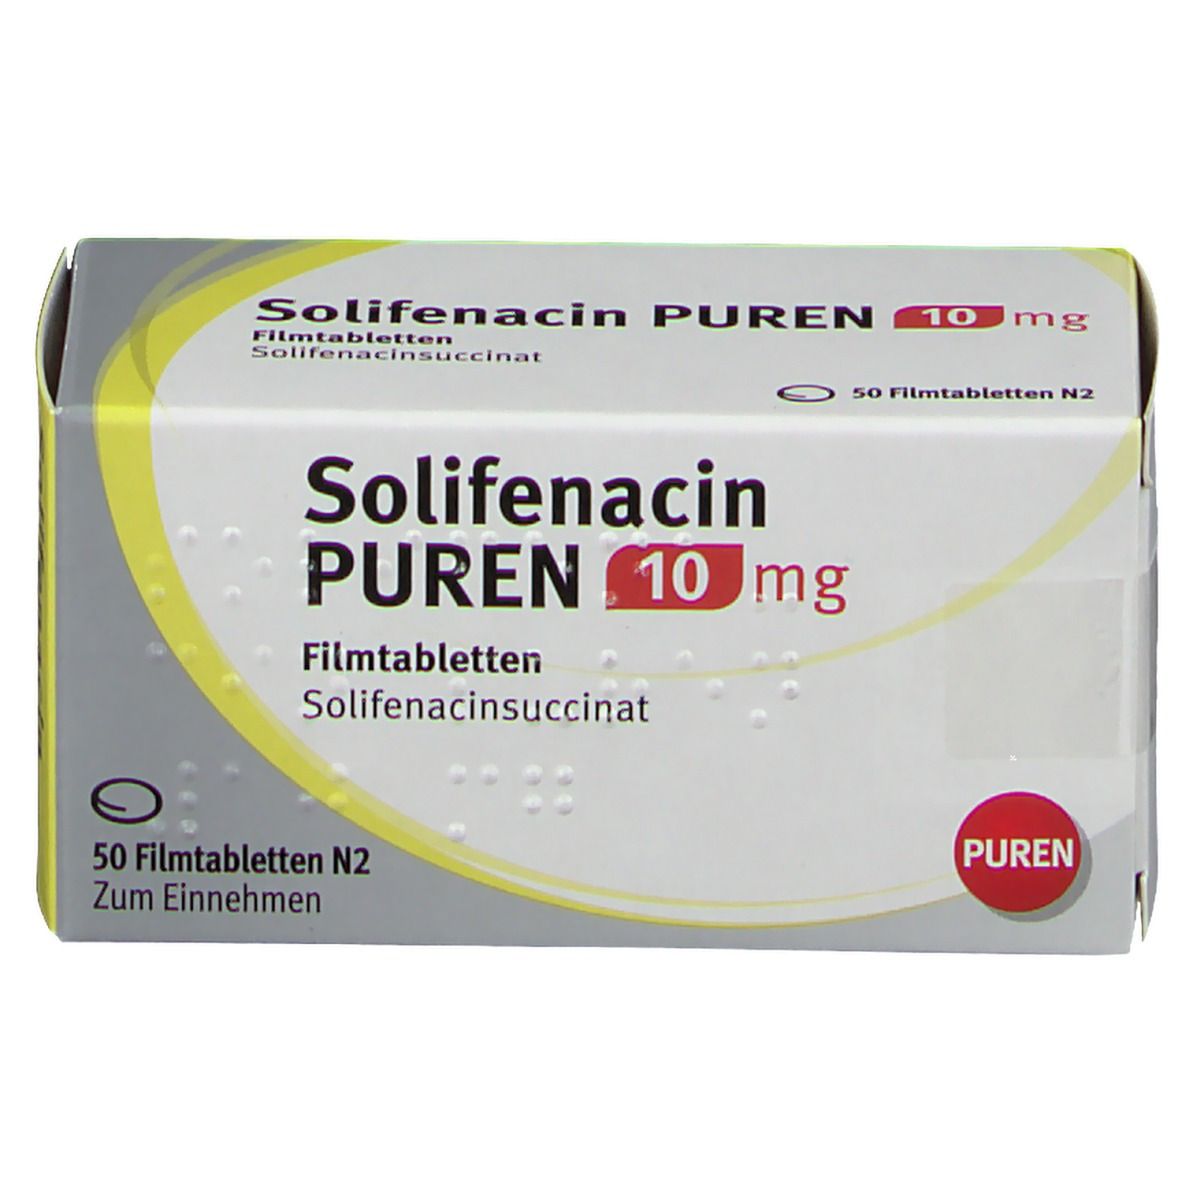 Solifenacin PUREN 10 mg